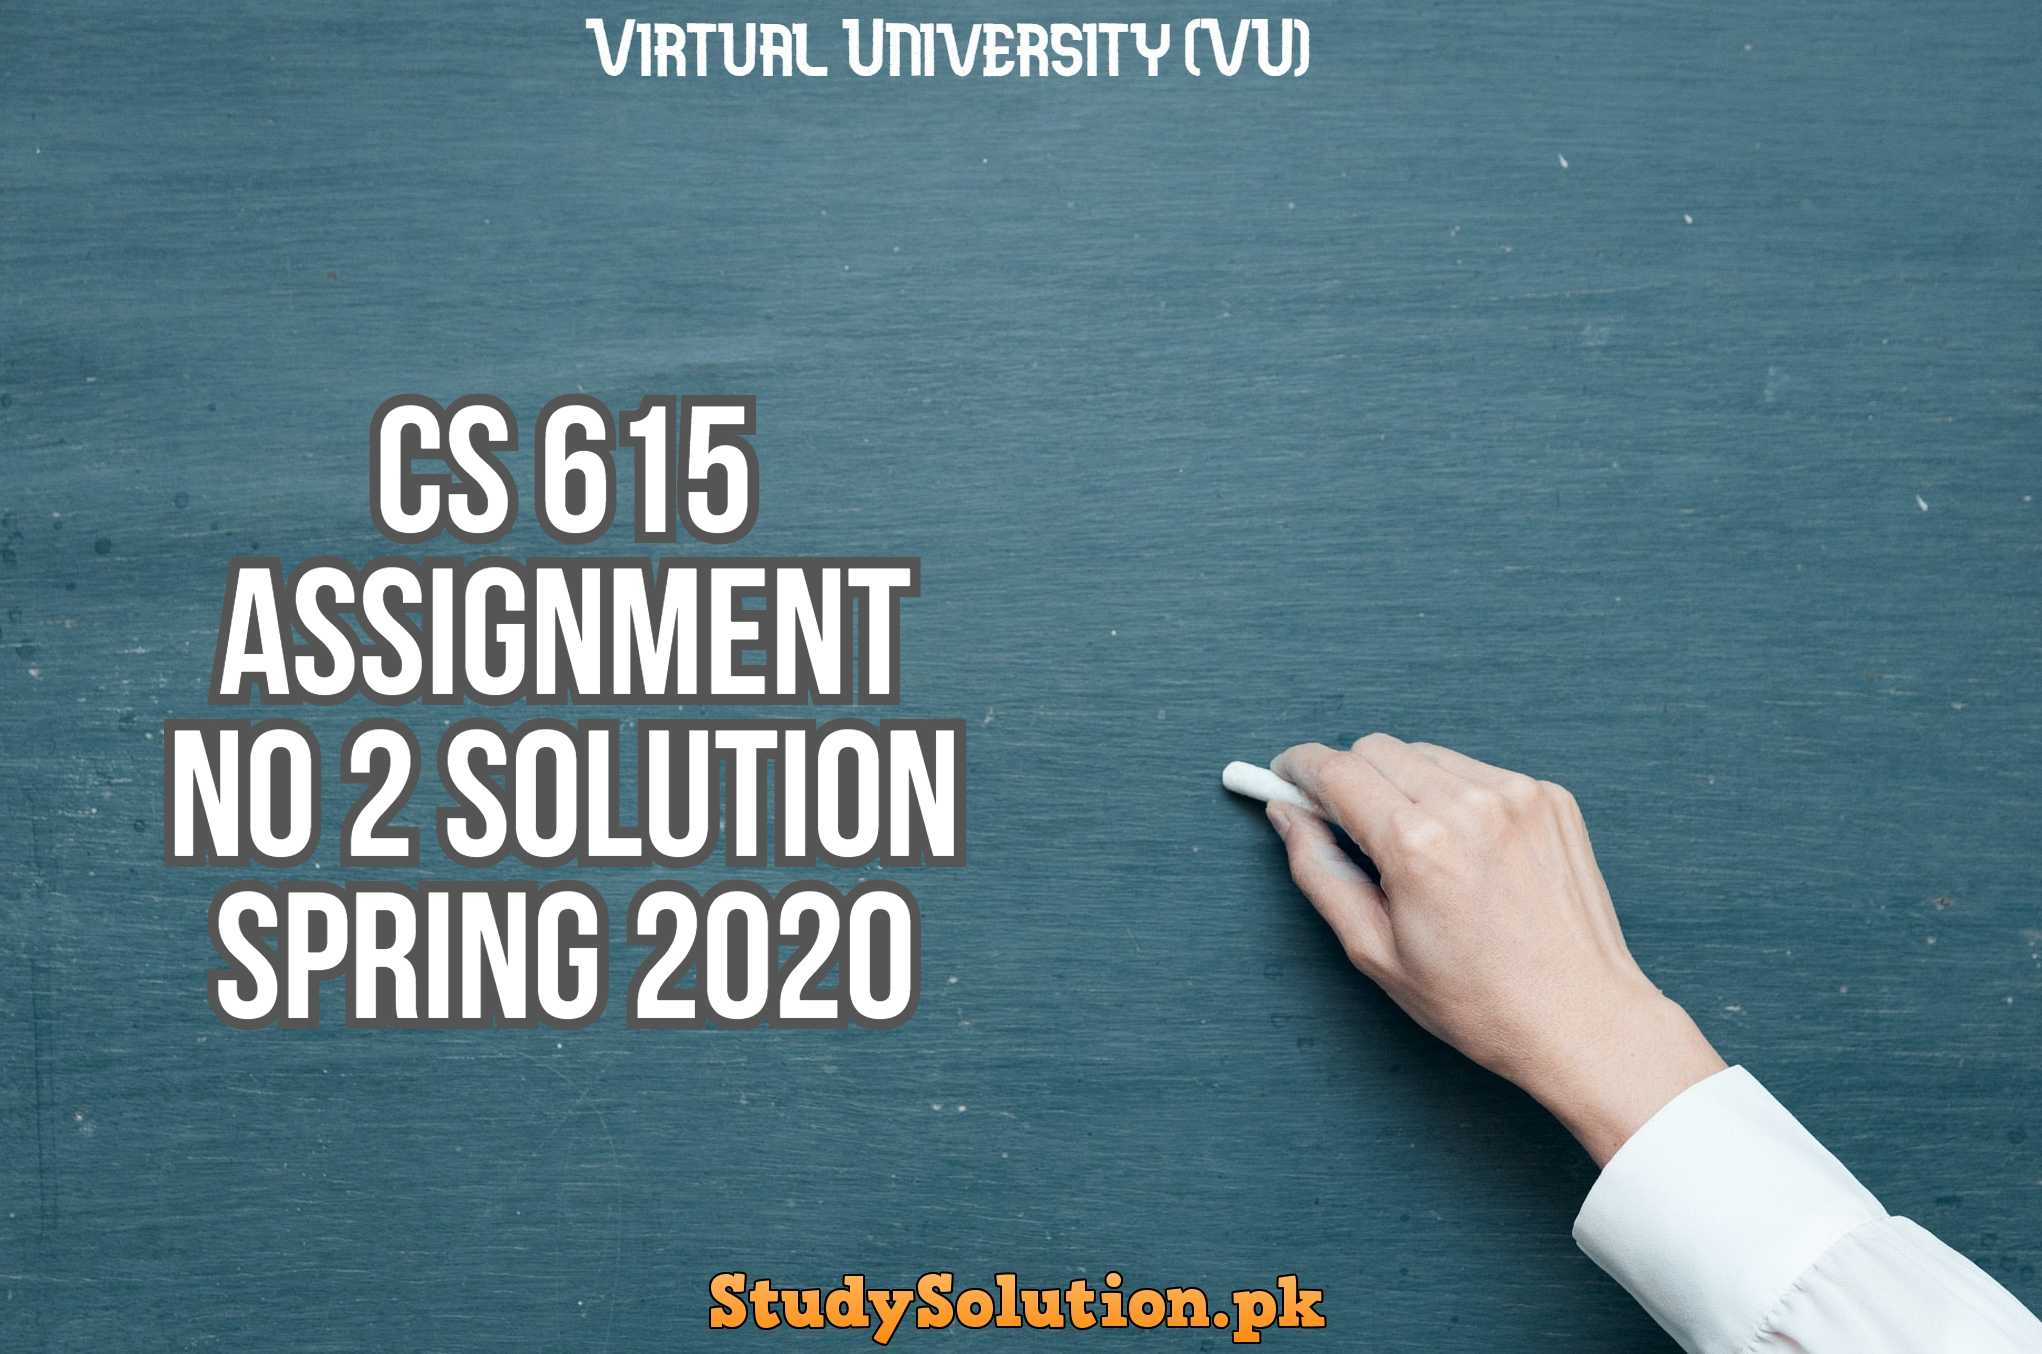 CS 615 Assignment No 2 Solution Spring 2020